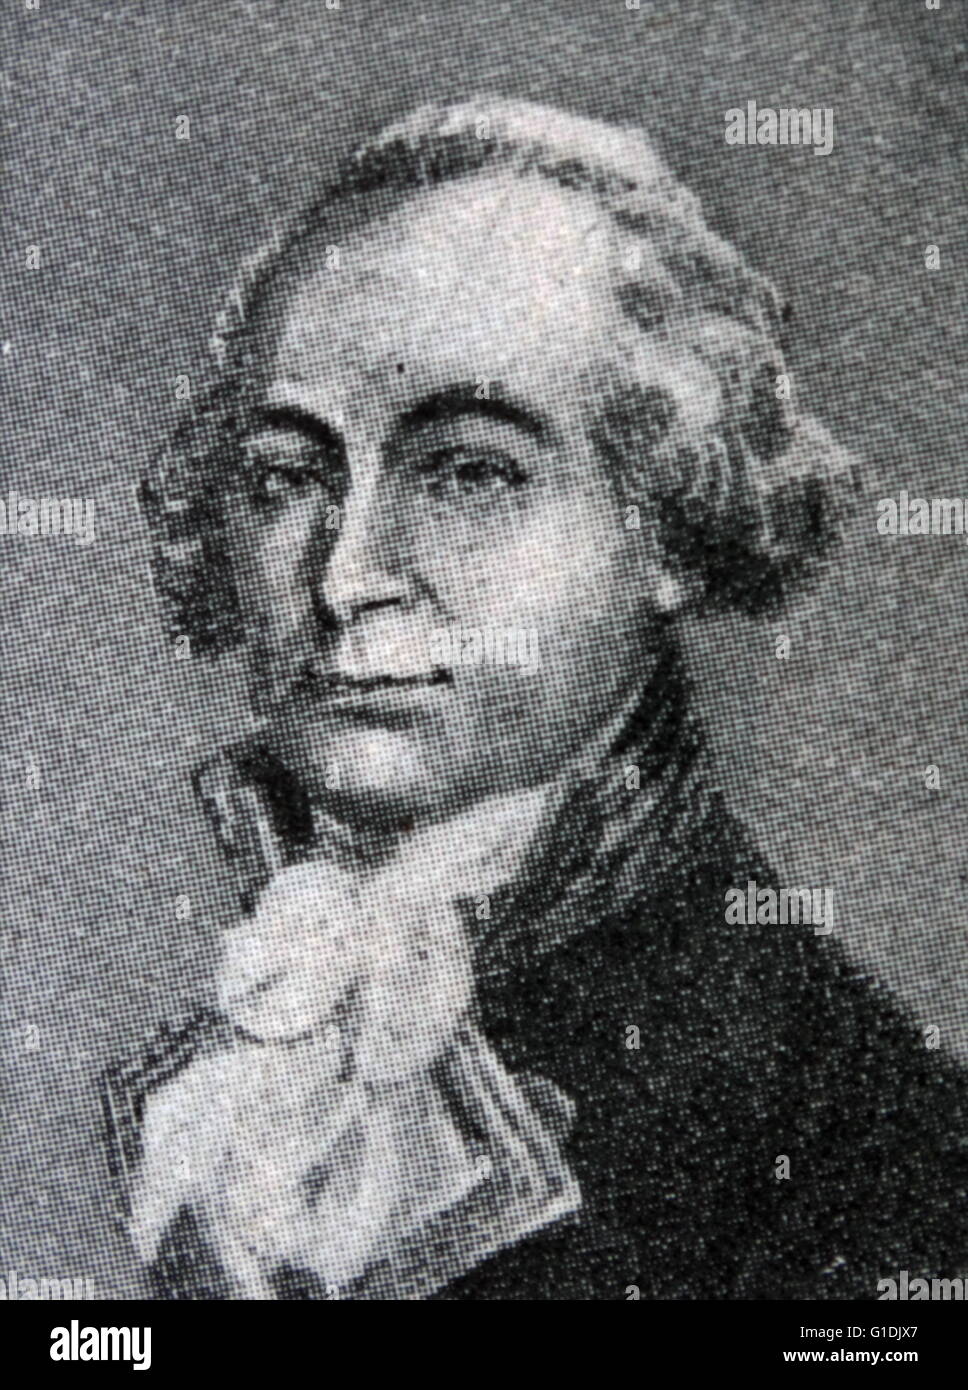 John Hunter 1737-1821, britische Nabel Offizier und Gouverneur von New South Wales, Australien 1795-1800. Datiert 1795 Stockfoto